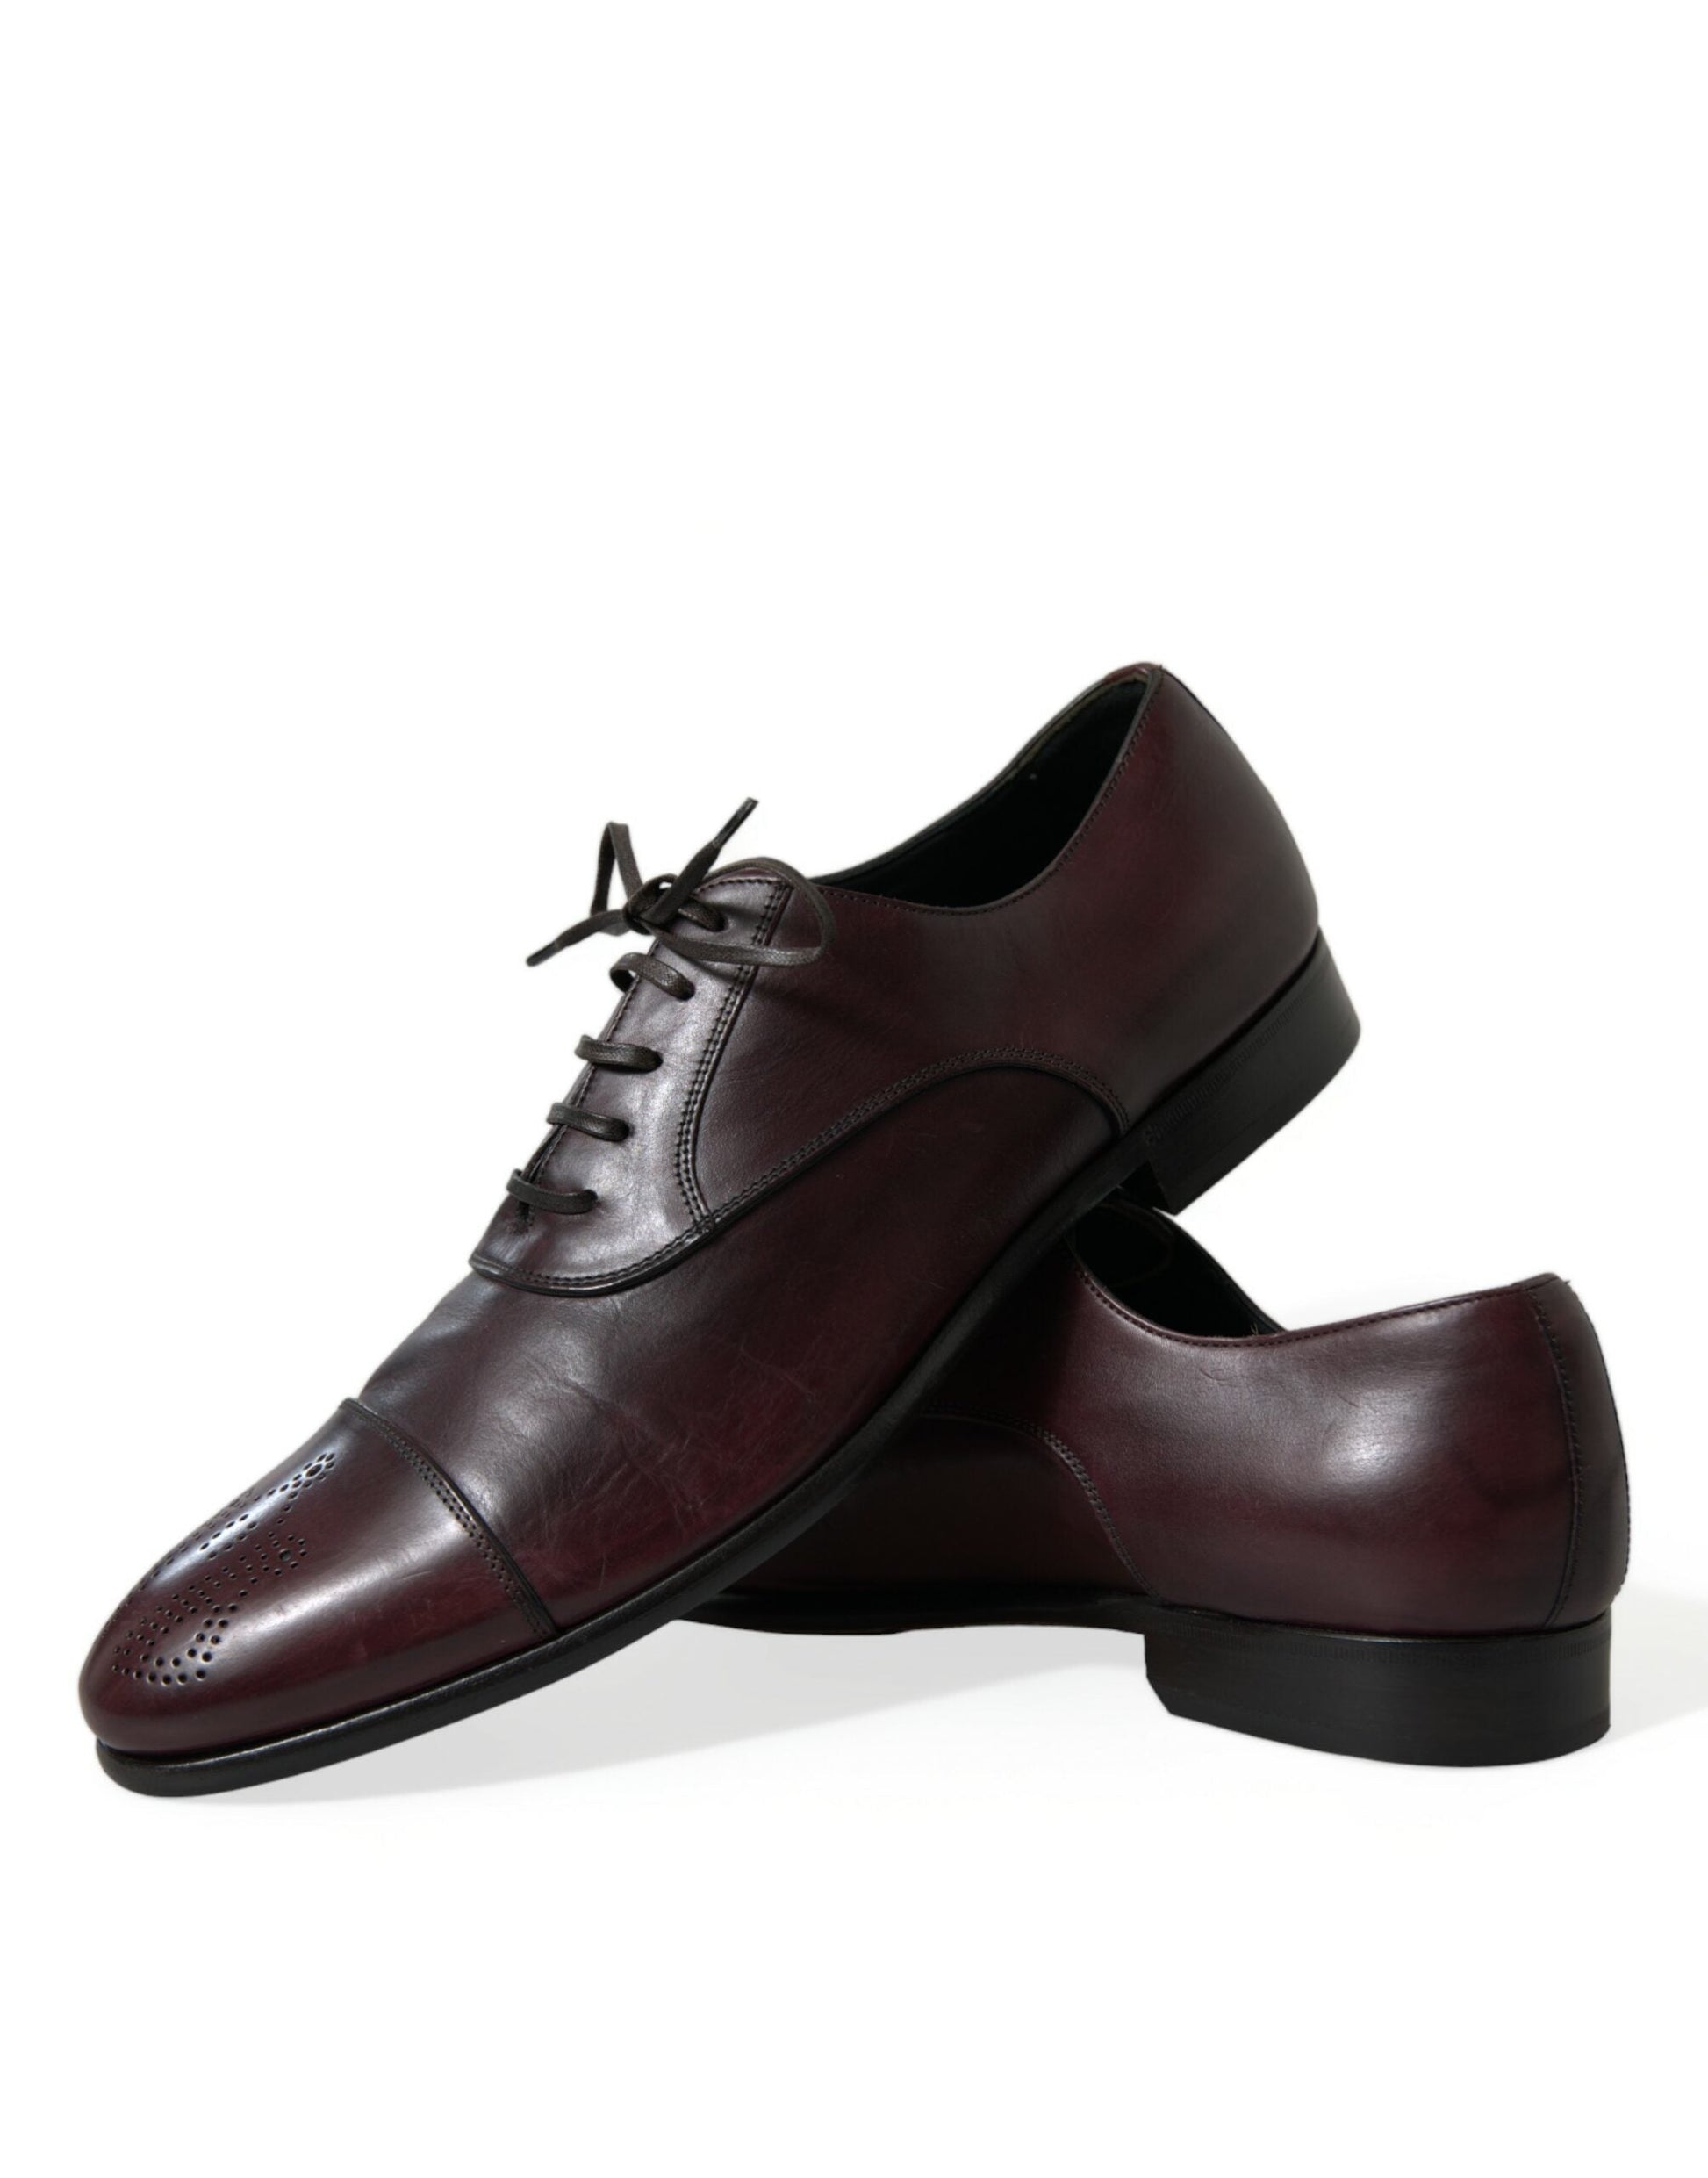 Dolce & Gabbana Bordeaux Leather Men Formal Derby Dress Shoes | Fashionsarah.com